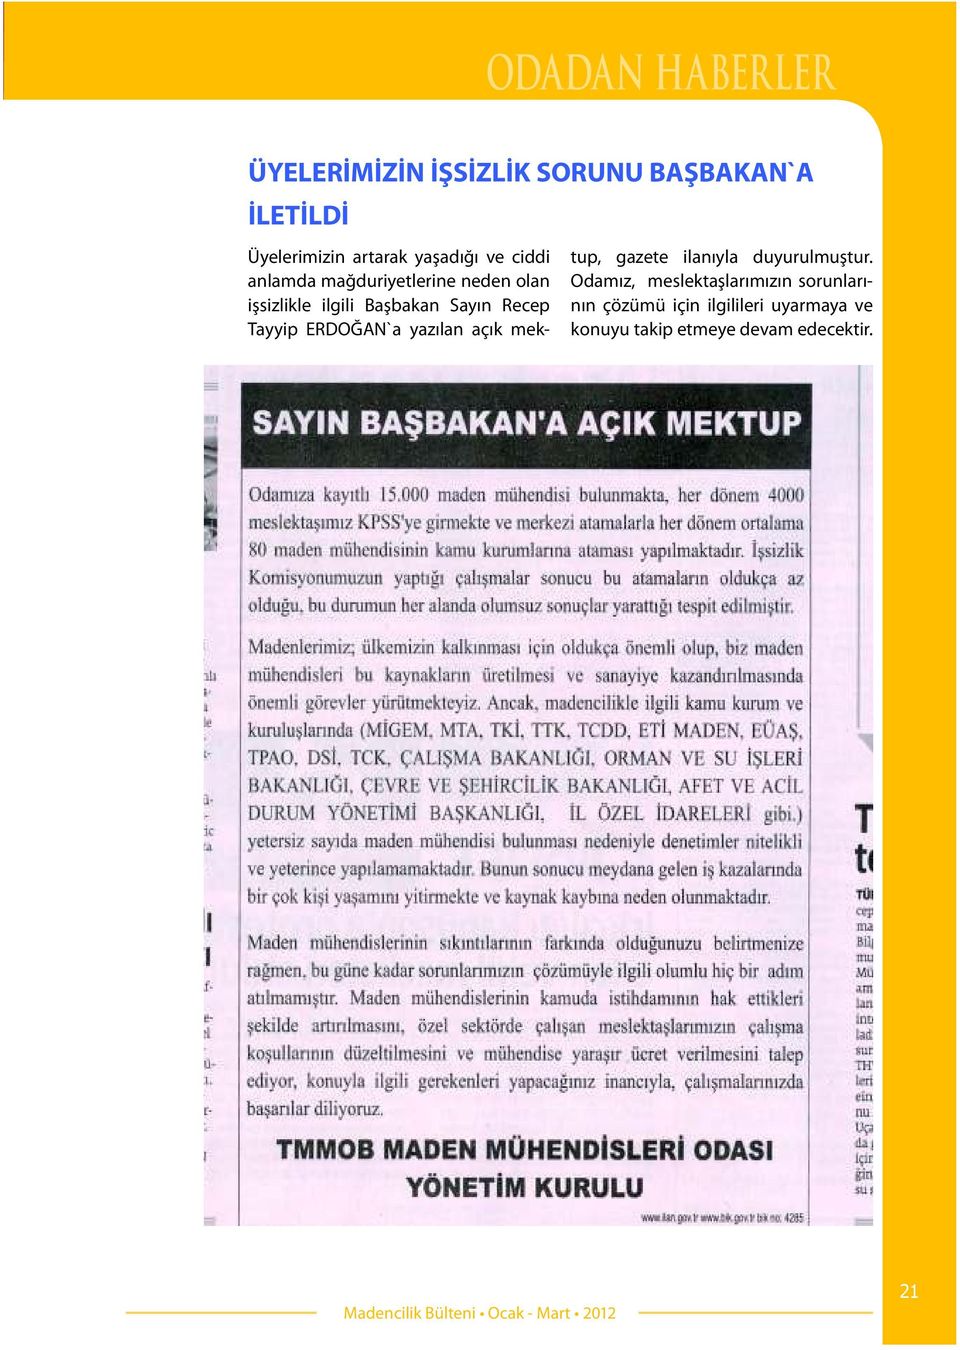 Recep Tayyip ERDOĞAN`a yazılan açık mektup, gazete ilanıyla duyurulmuştur.